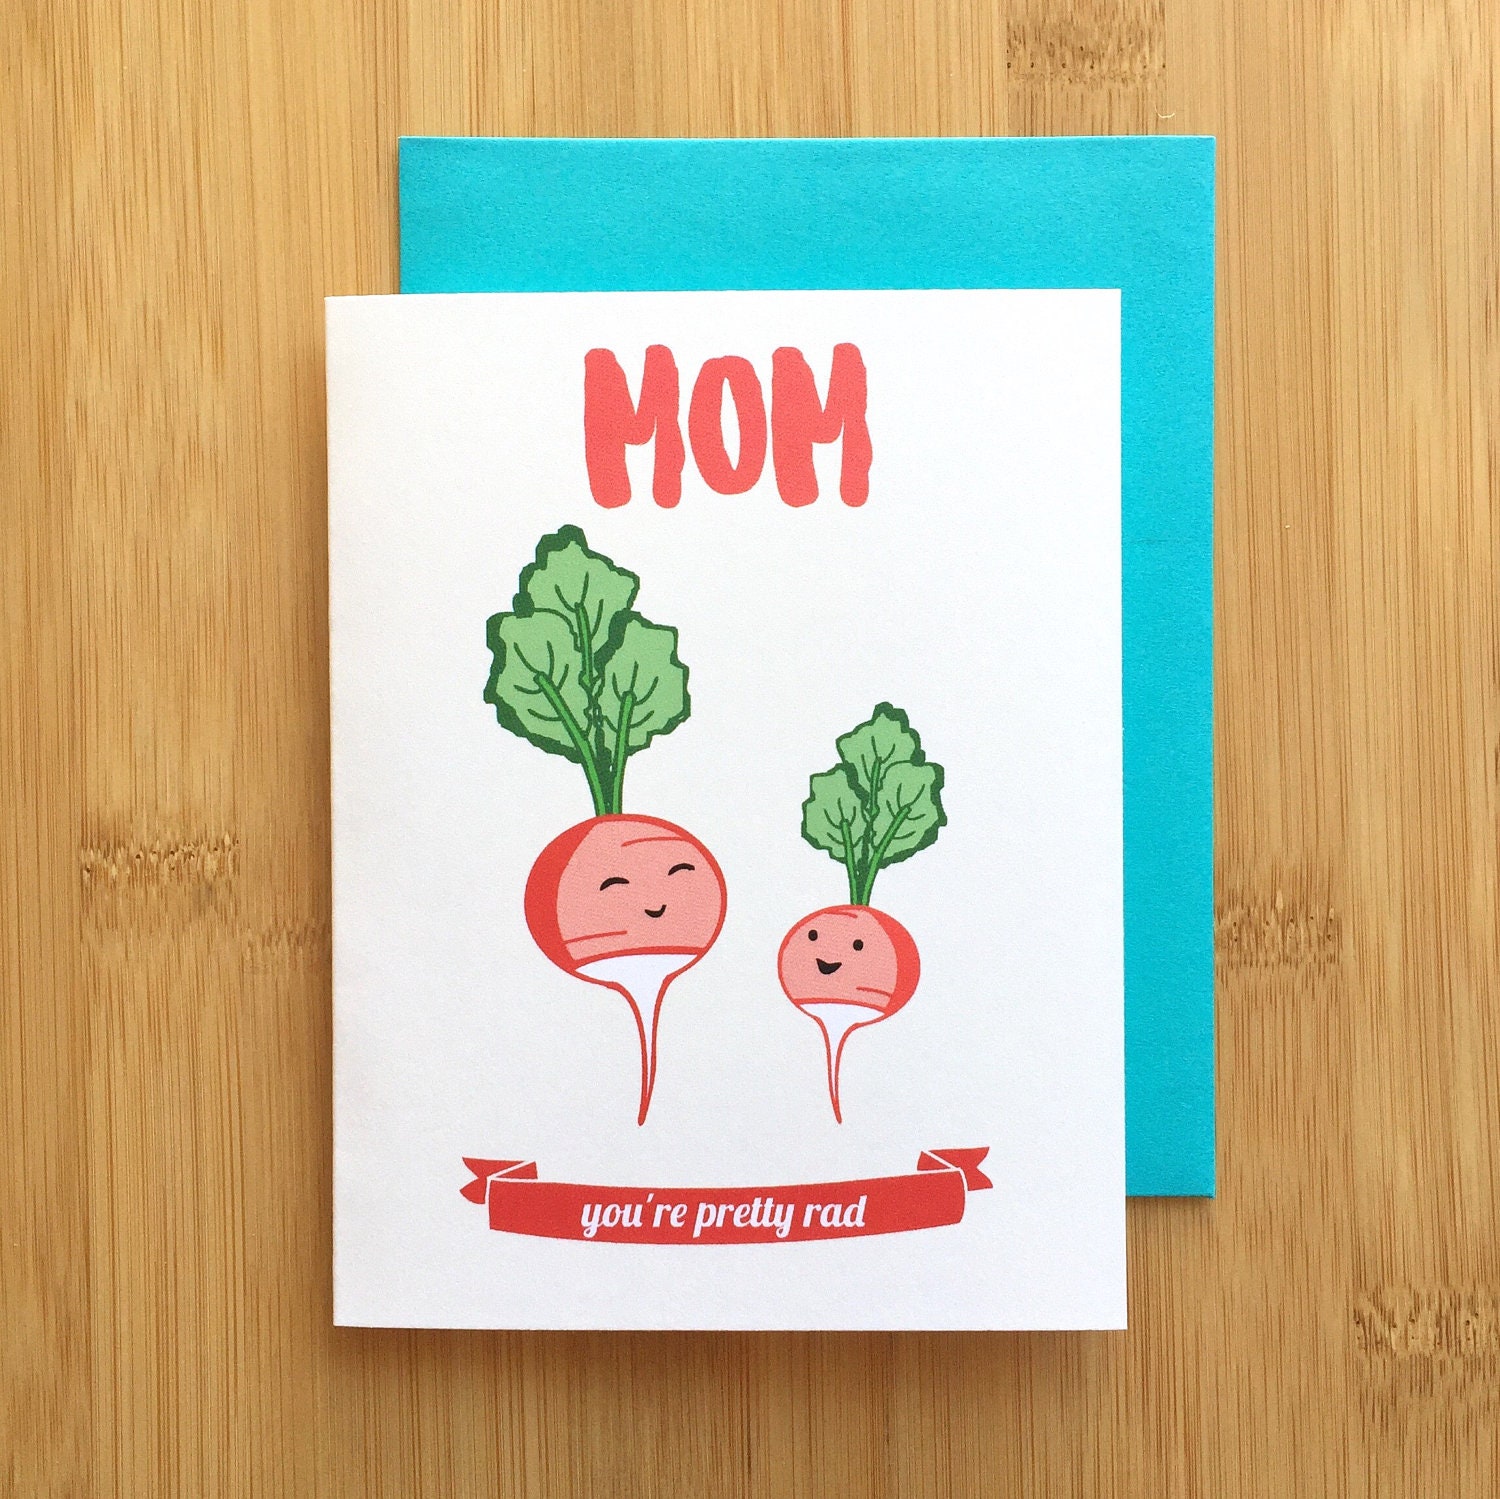 Cute Birthday Card Ideas For Mom Bitrhday Gallery